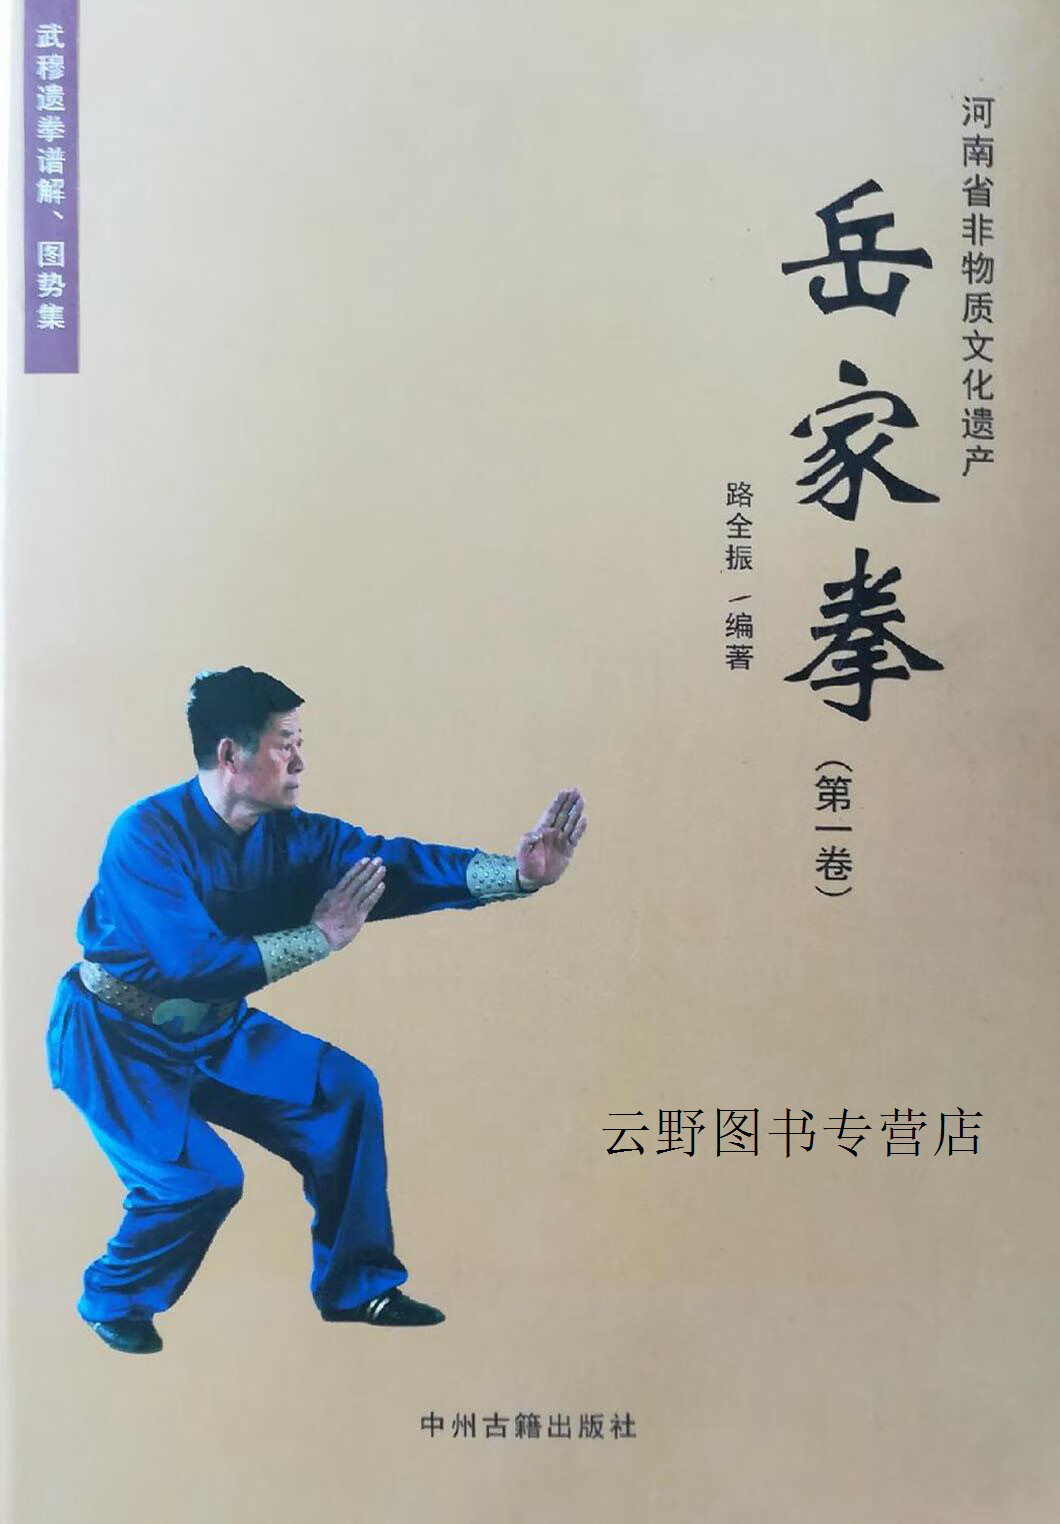 岳家拳 卷,路全振,路国太编著,中州古籍出版社,9787534865954